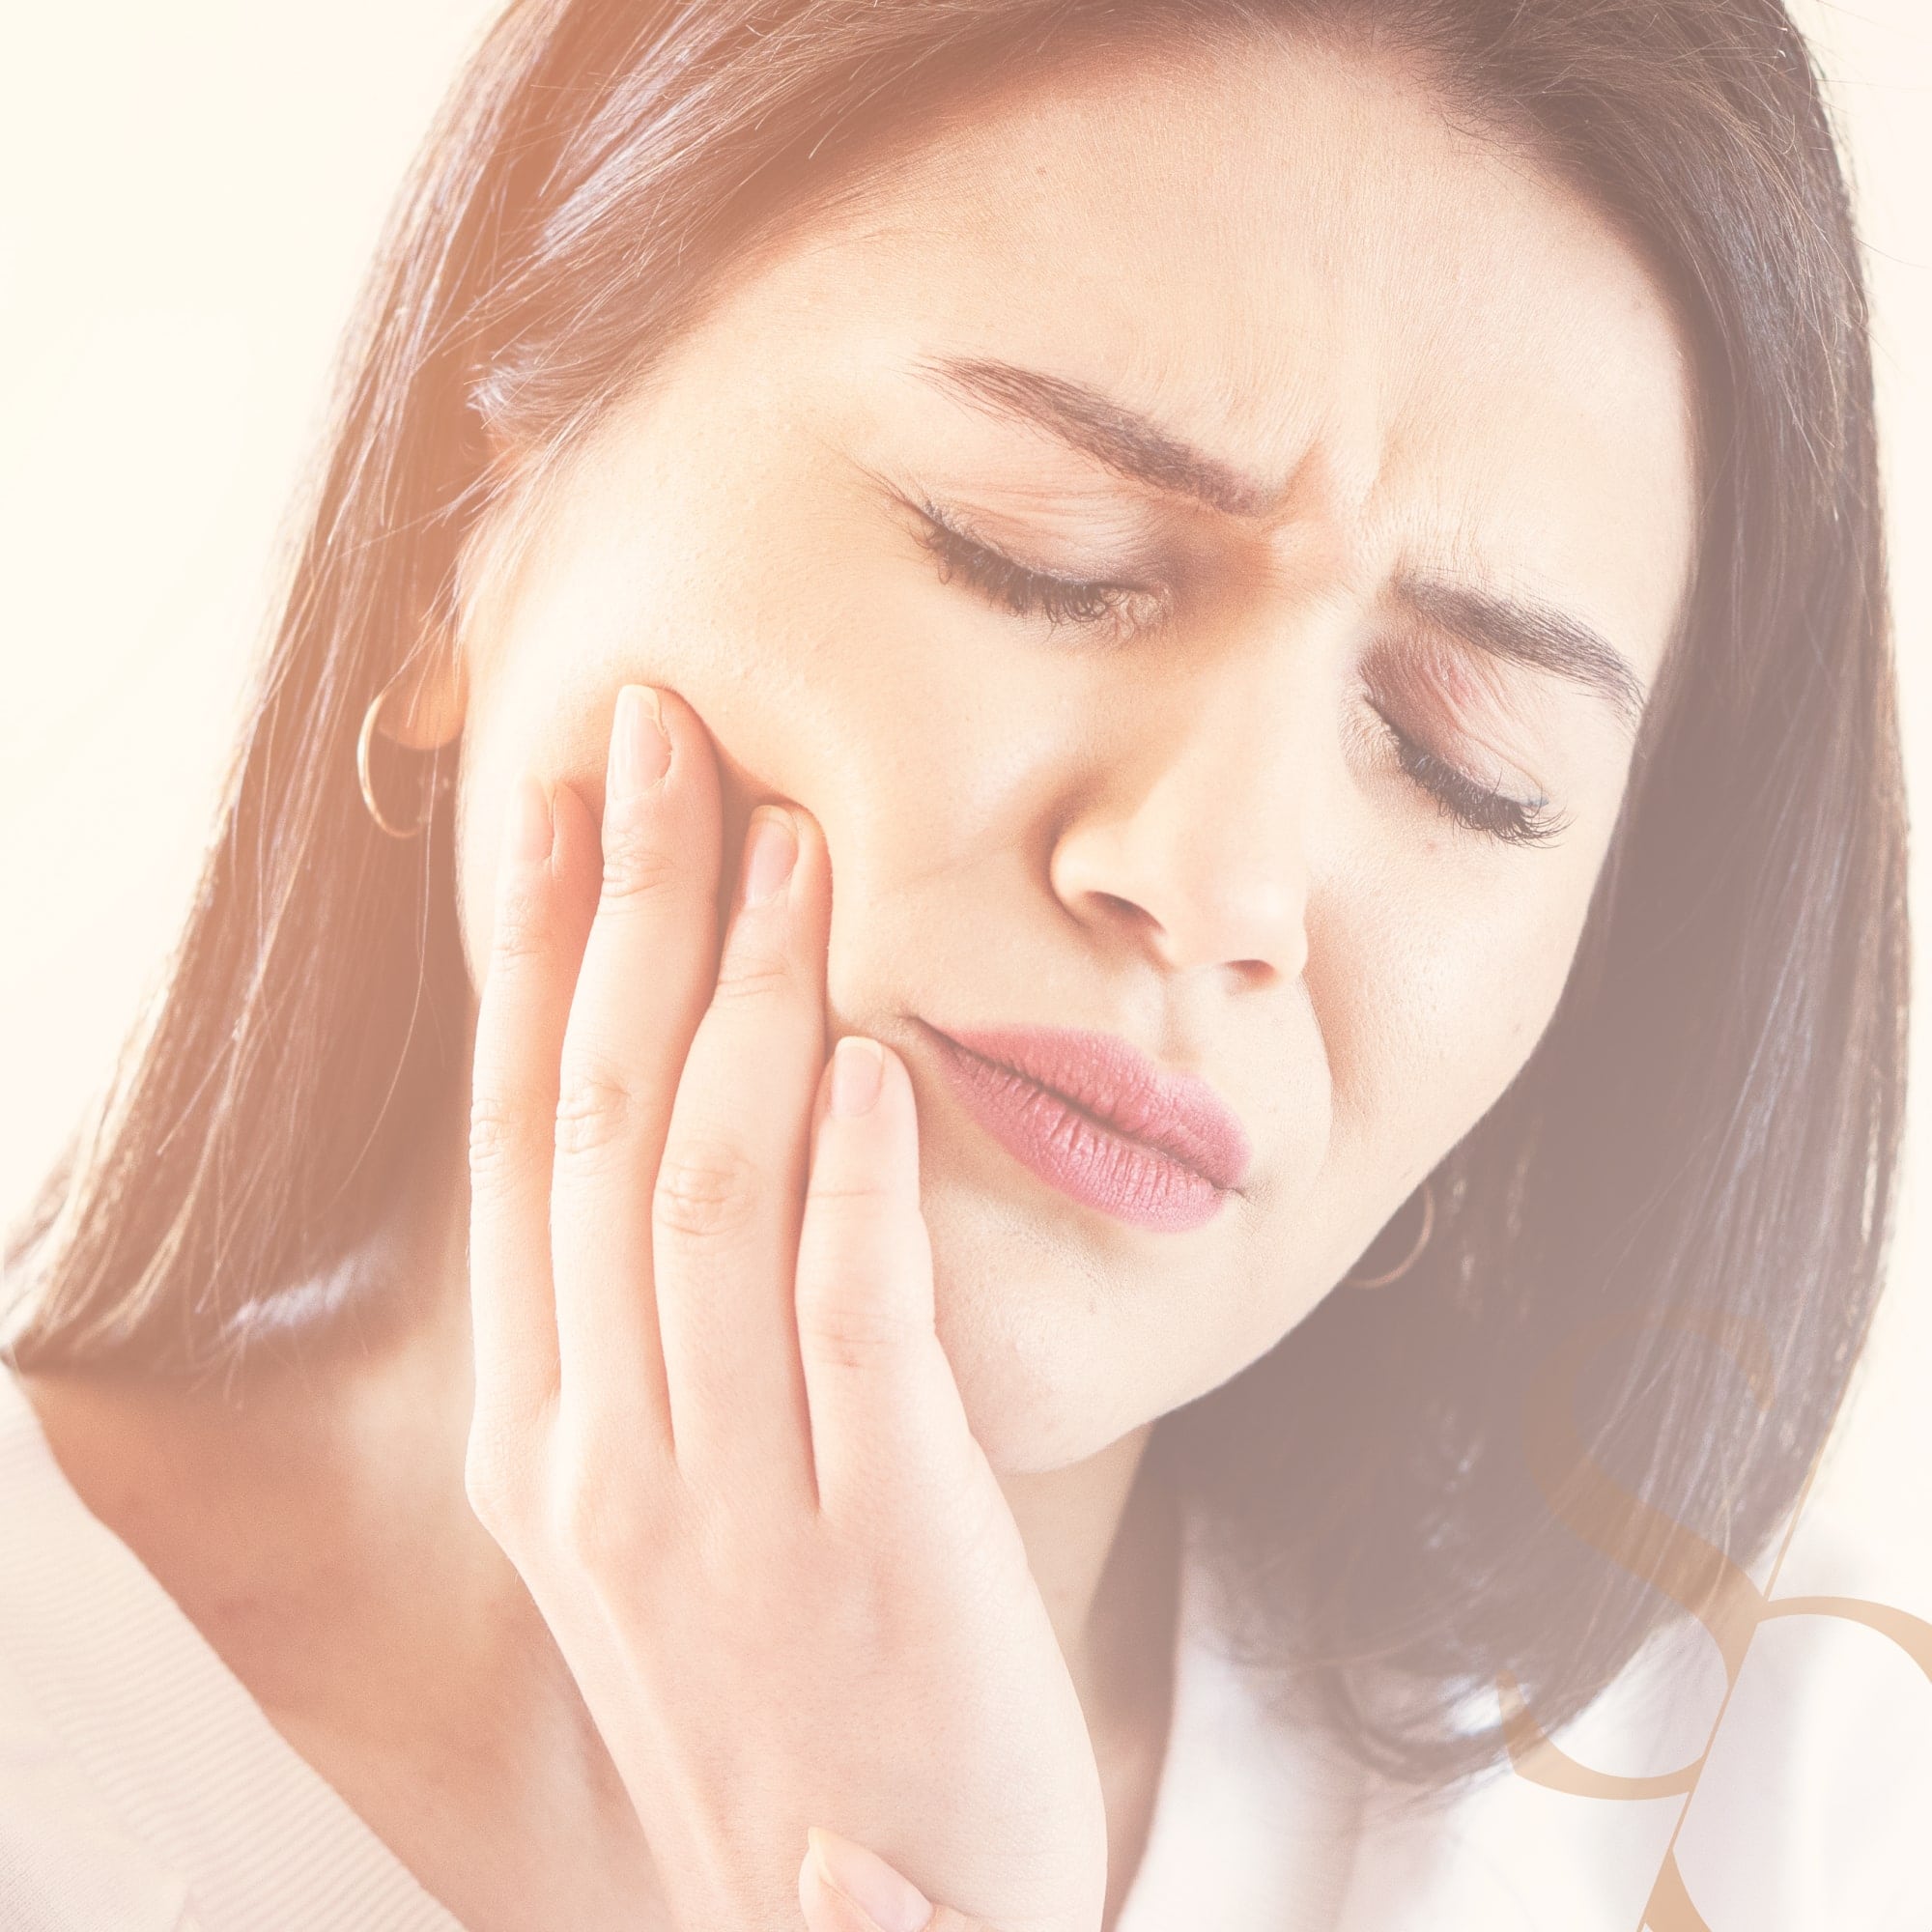 Rage de dents : causes et traitements | Pulpite dentaire | Clinique Sana Oris Paris 8